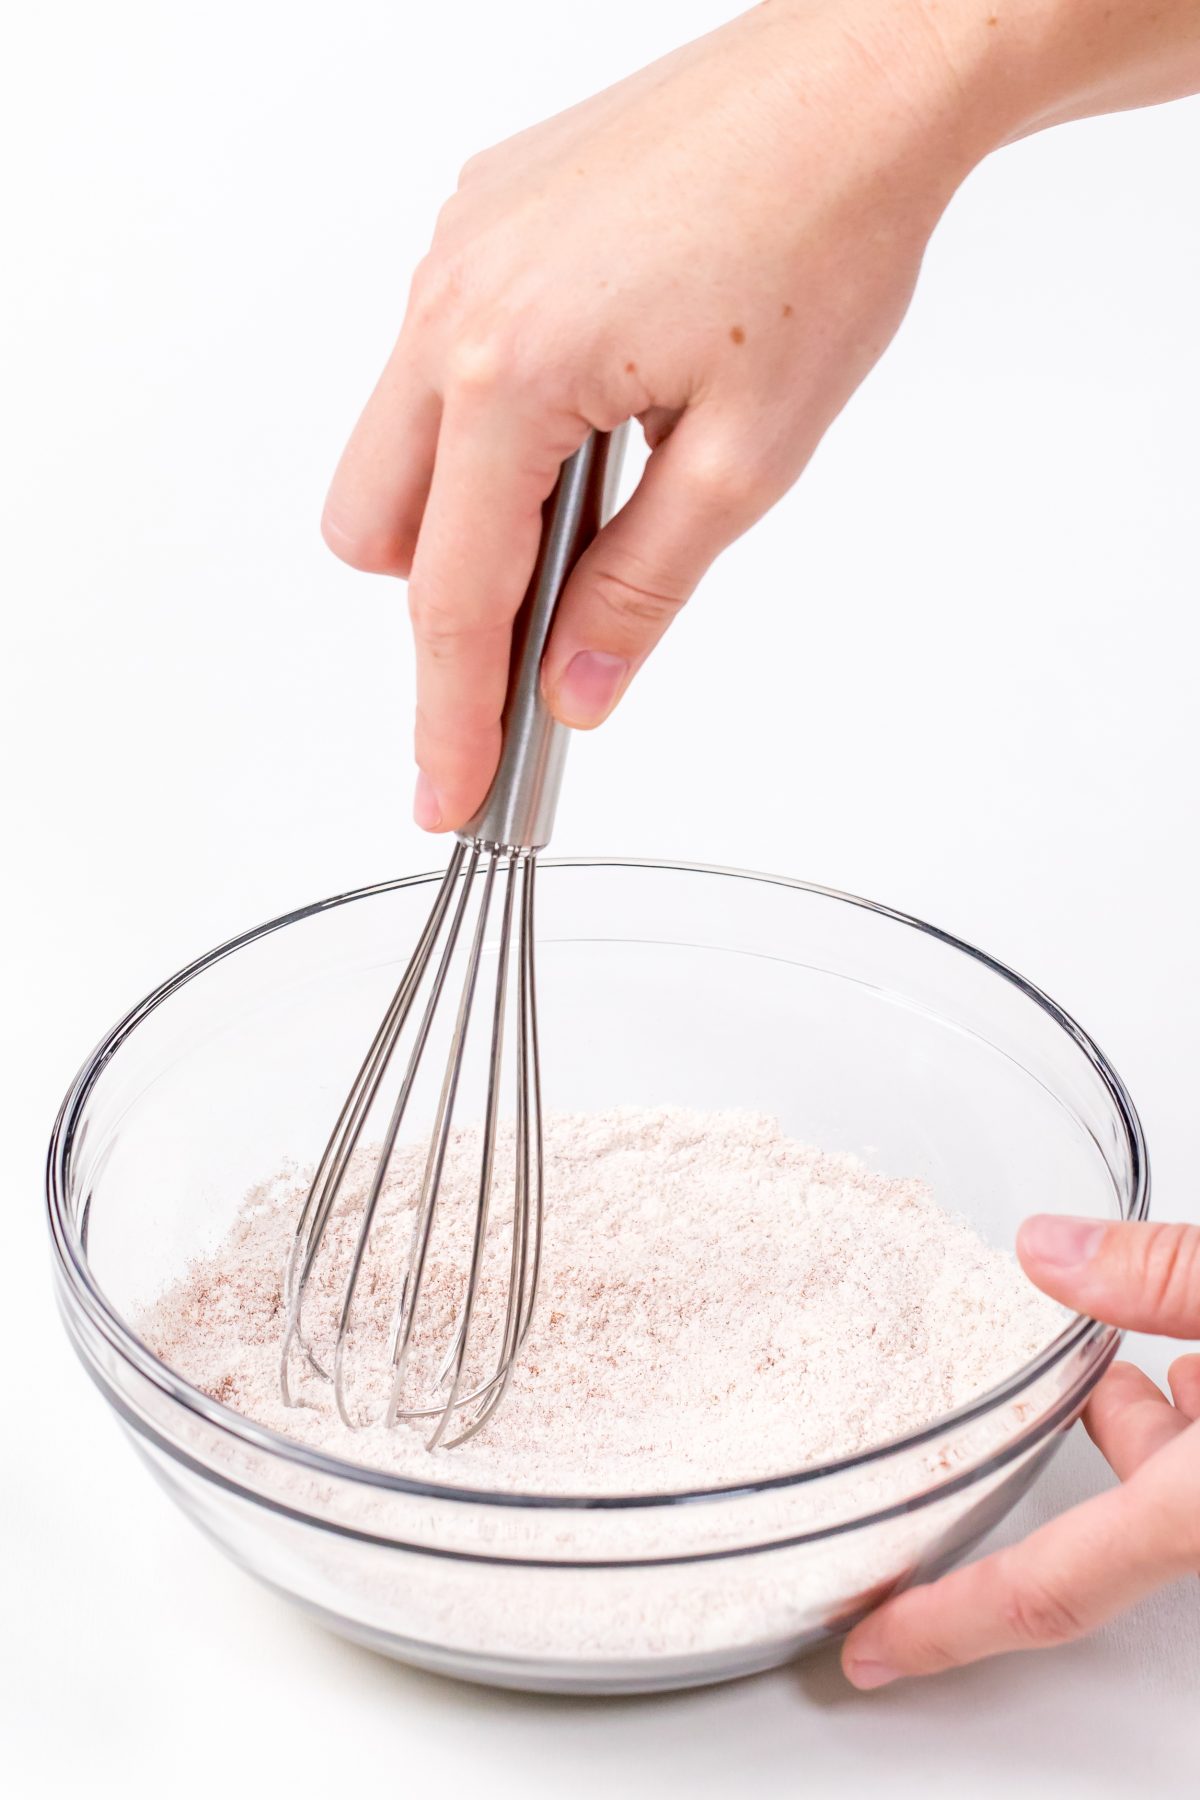 Whisk flour, paprika, baking powder and salt together